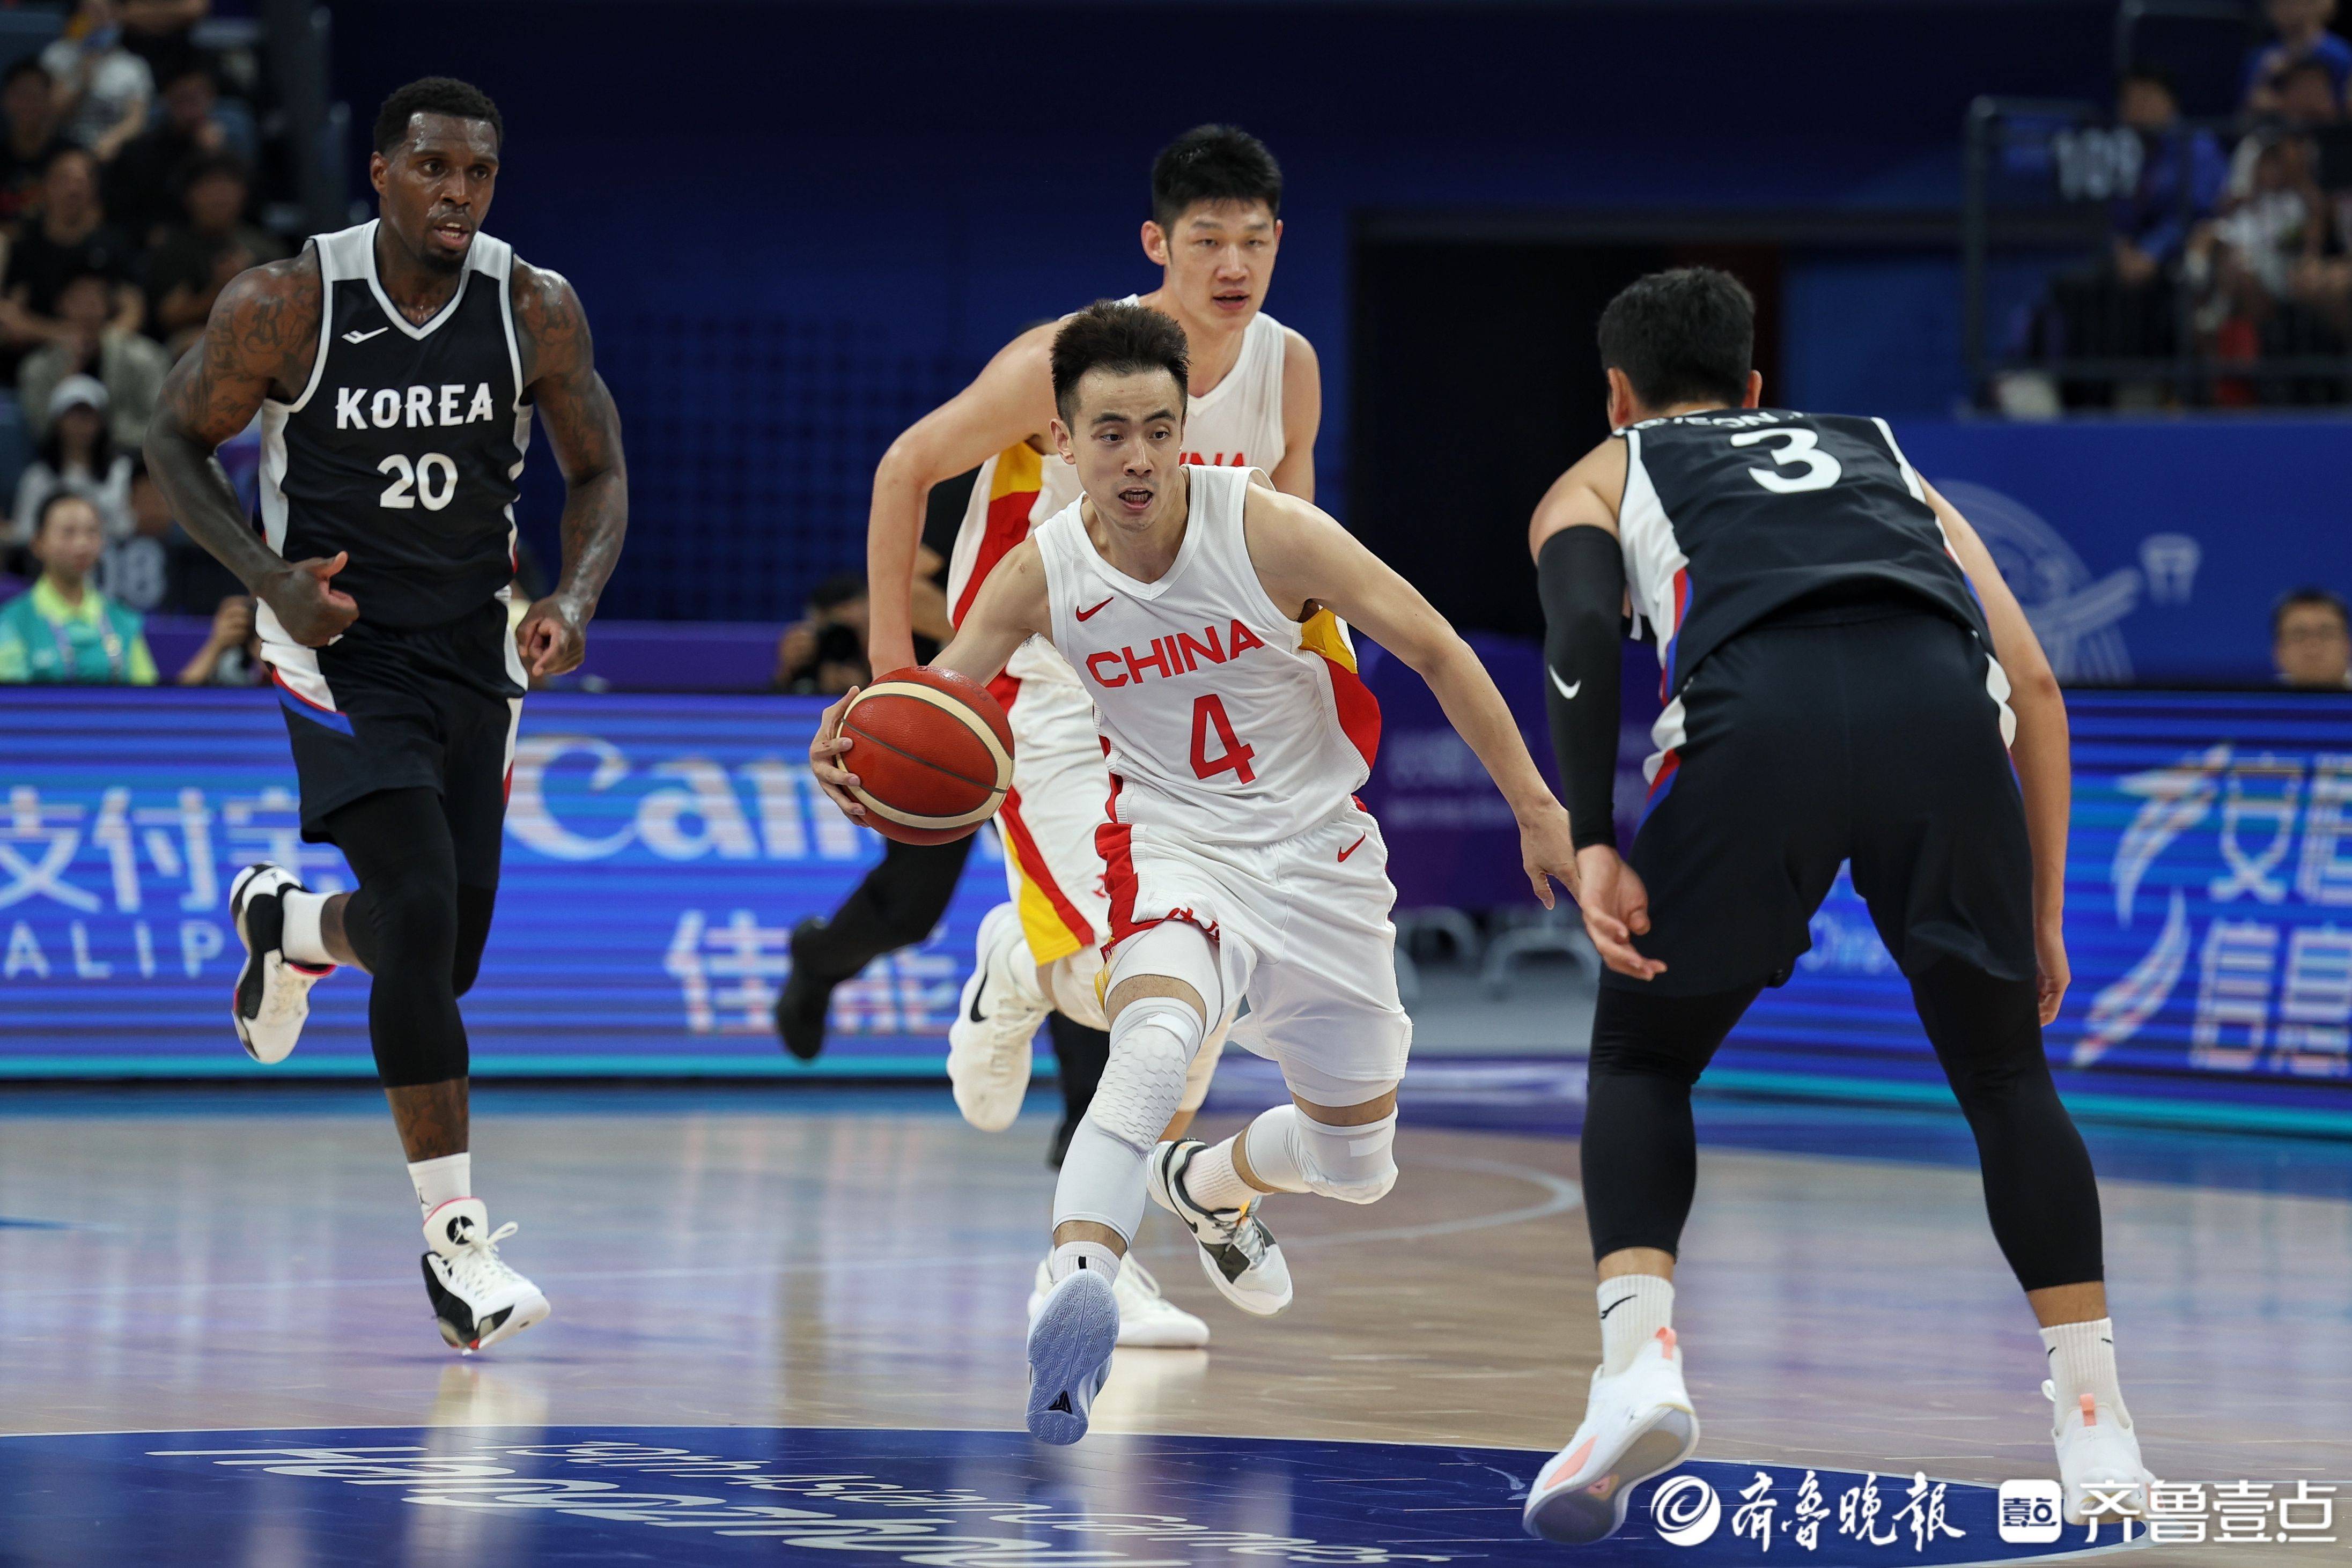 中国男篮凭借出色的防守,以84:70击败韩国男篮特派记者 王鑫